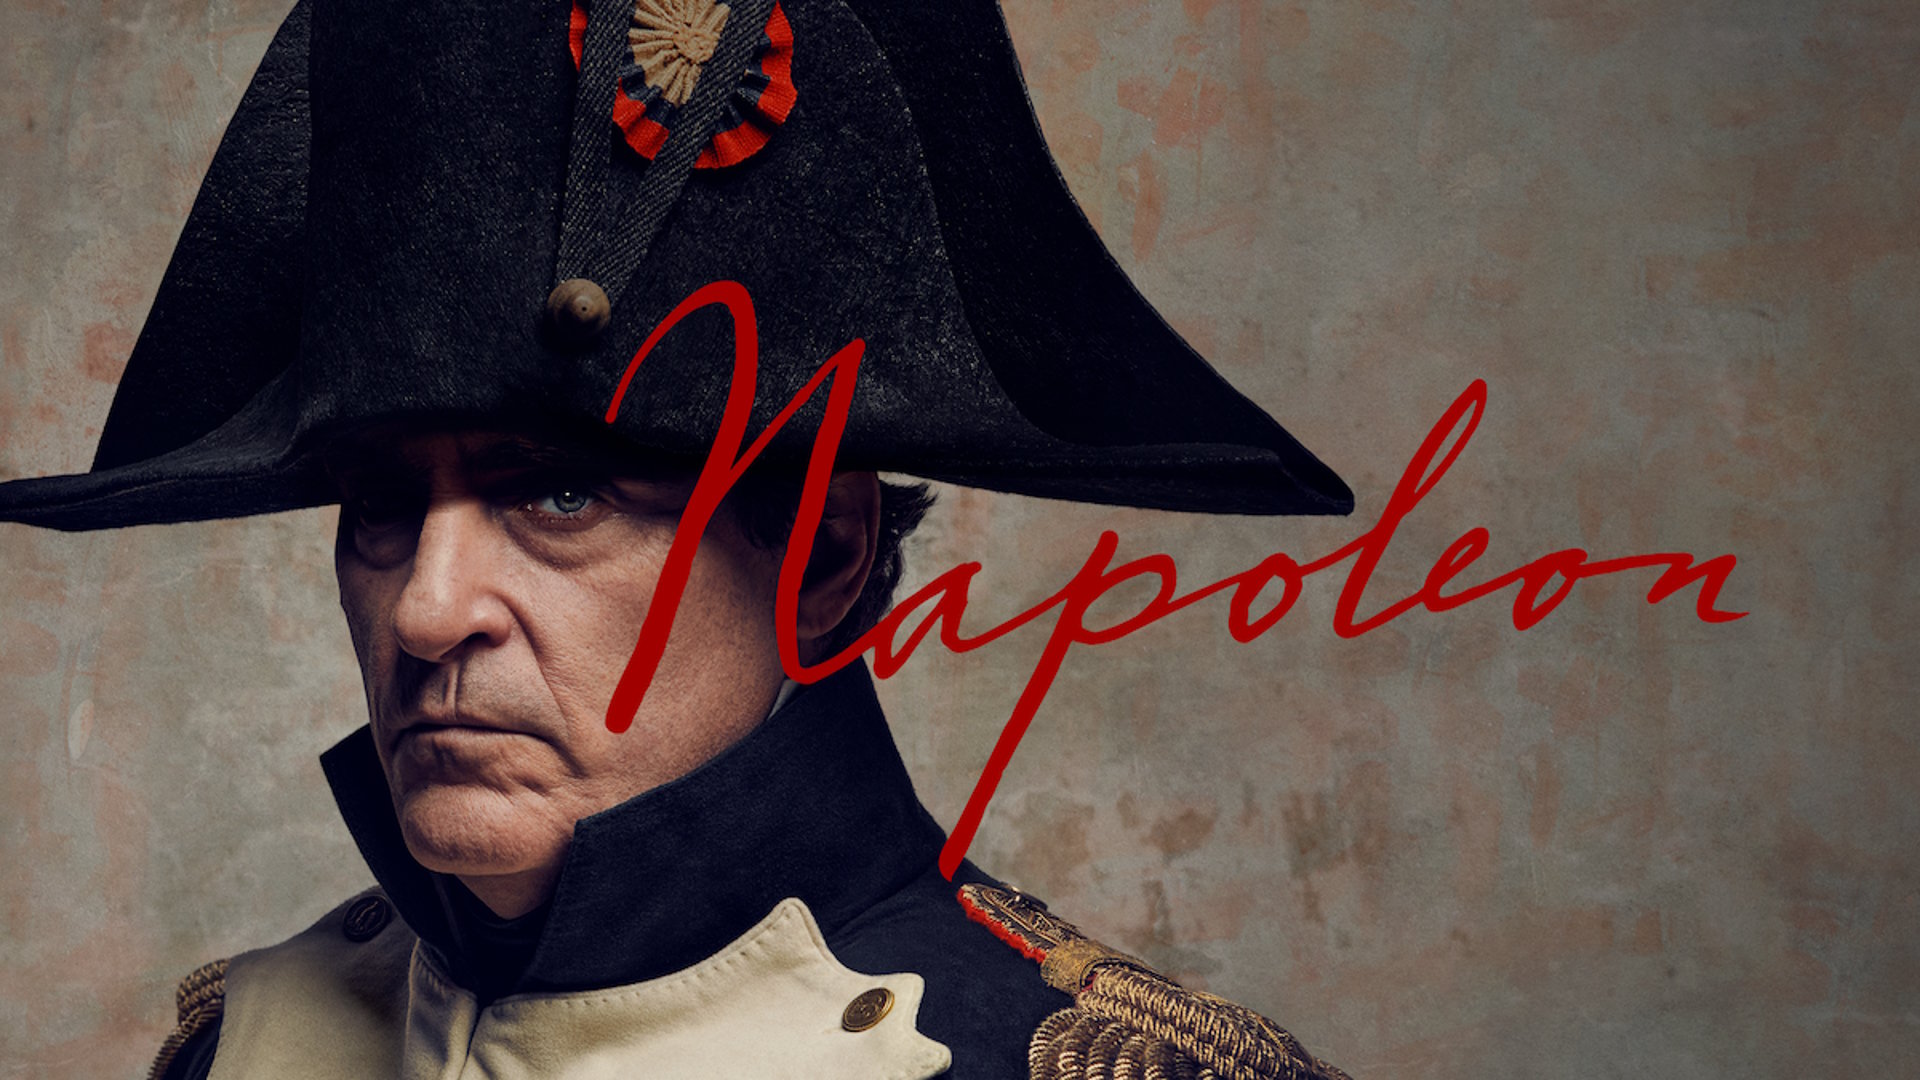 Llega a los cines colombianos el drama histórico “Napoleón” – Revista Enredarte